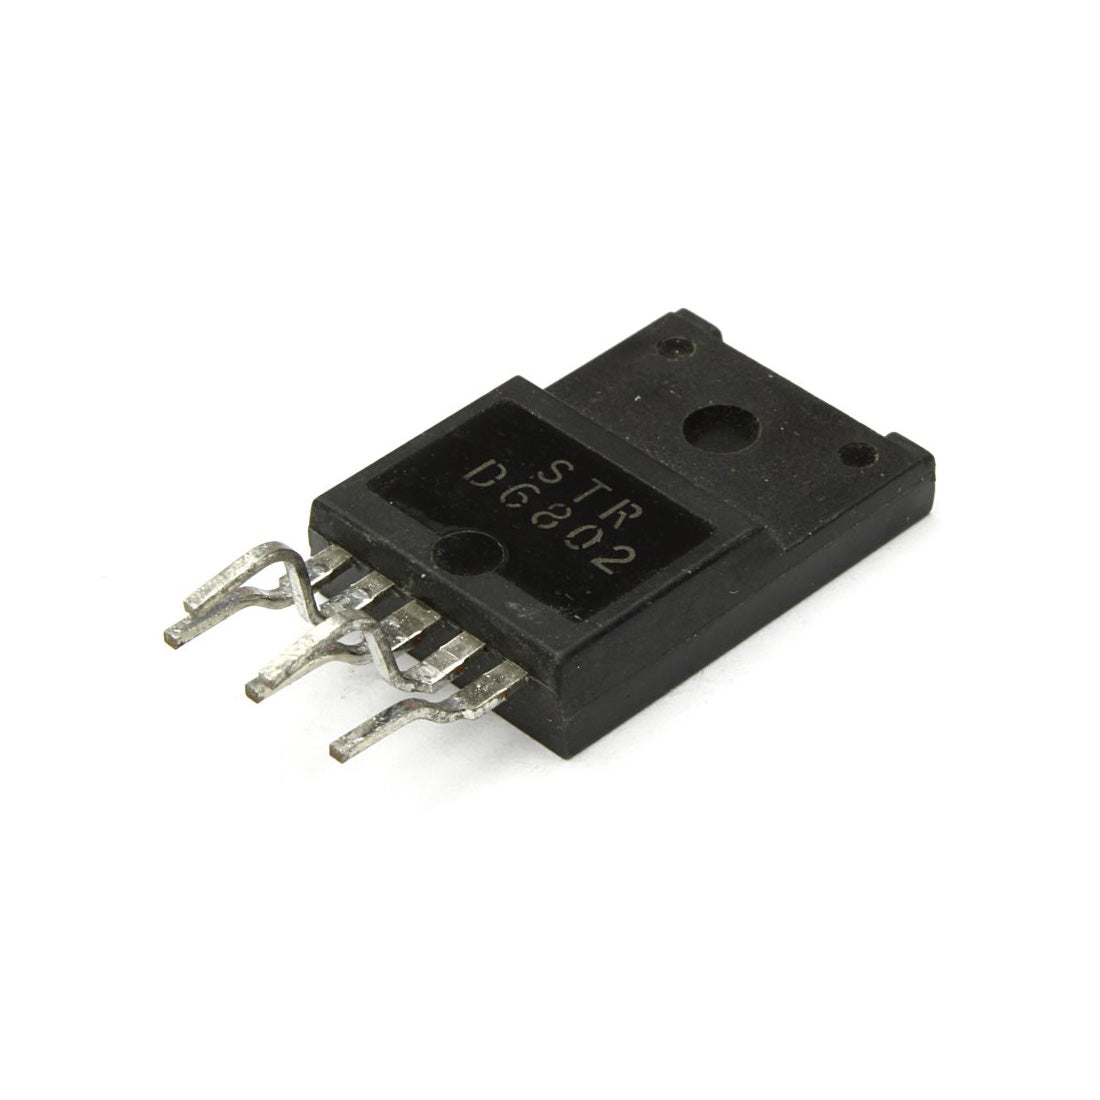 STRD6802 Circuito integrato, componente elettronico, transistor, 5 contatti